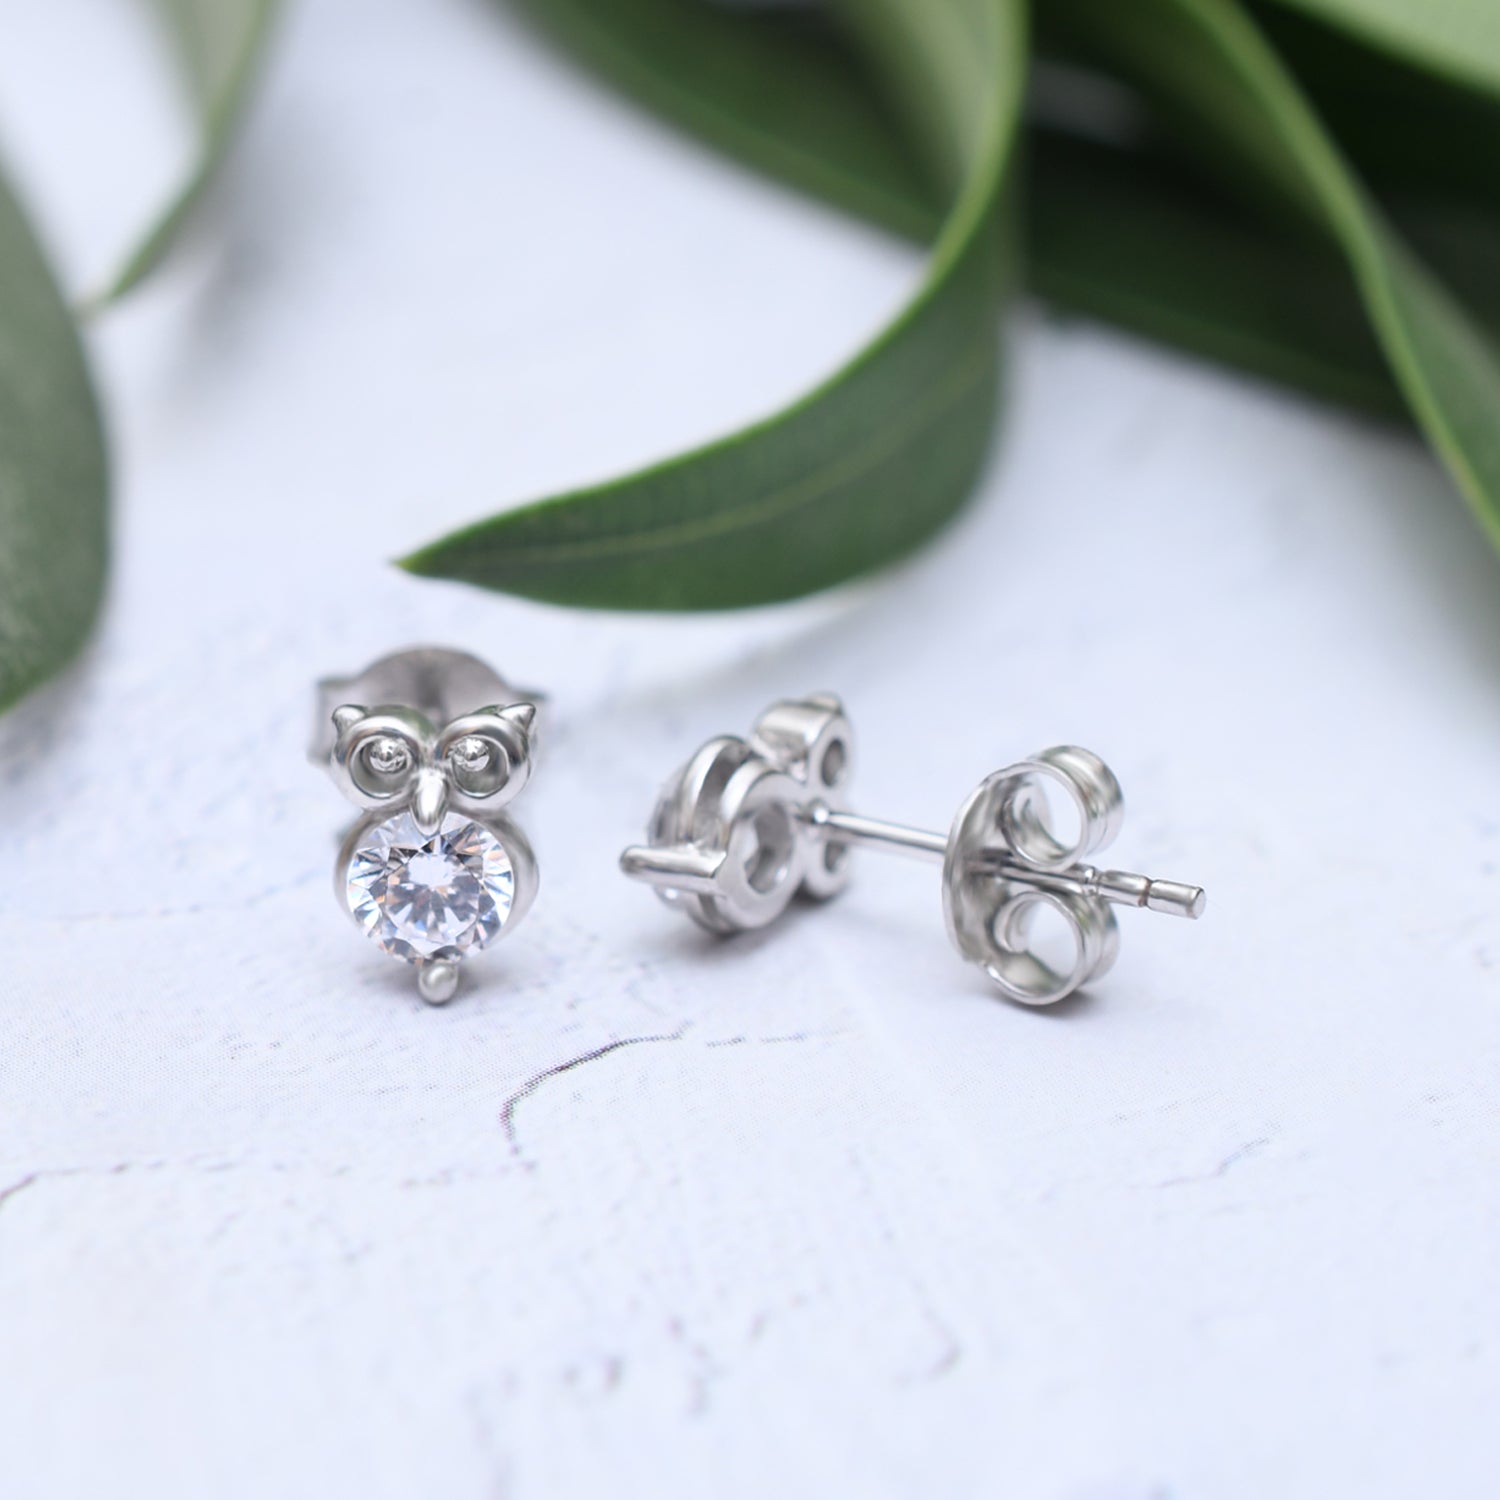 Silver Little Sparkling Owl Stud Earrings